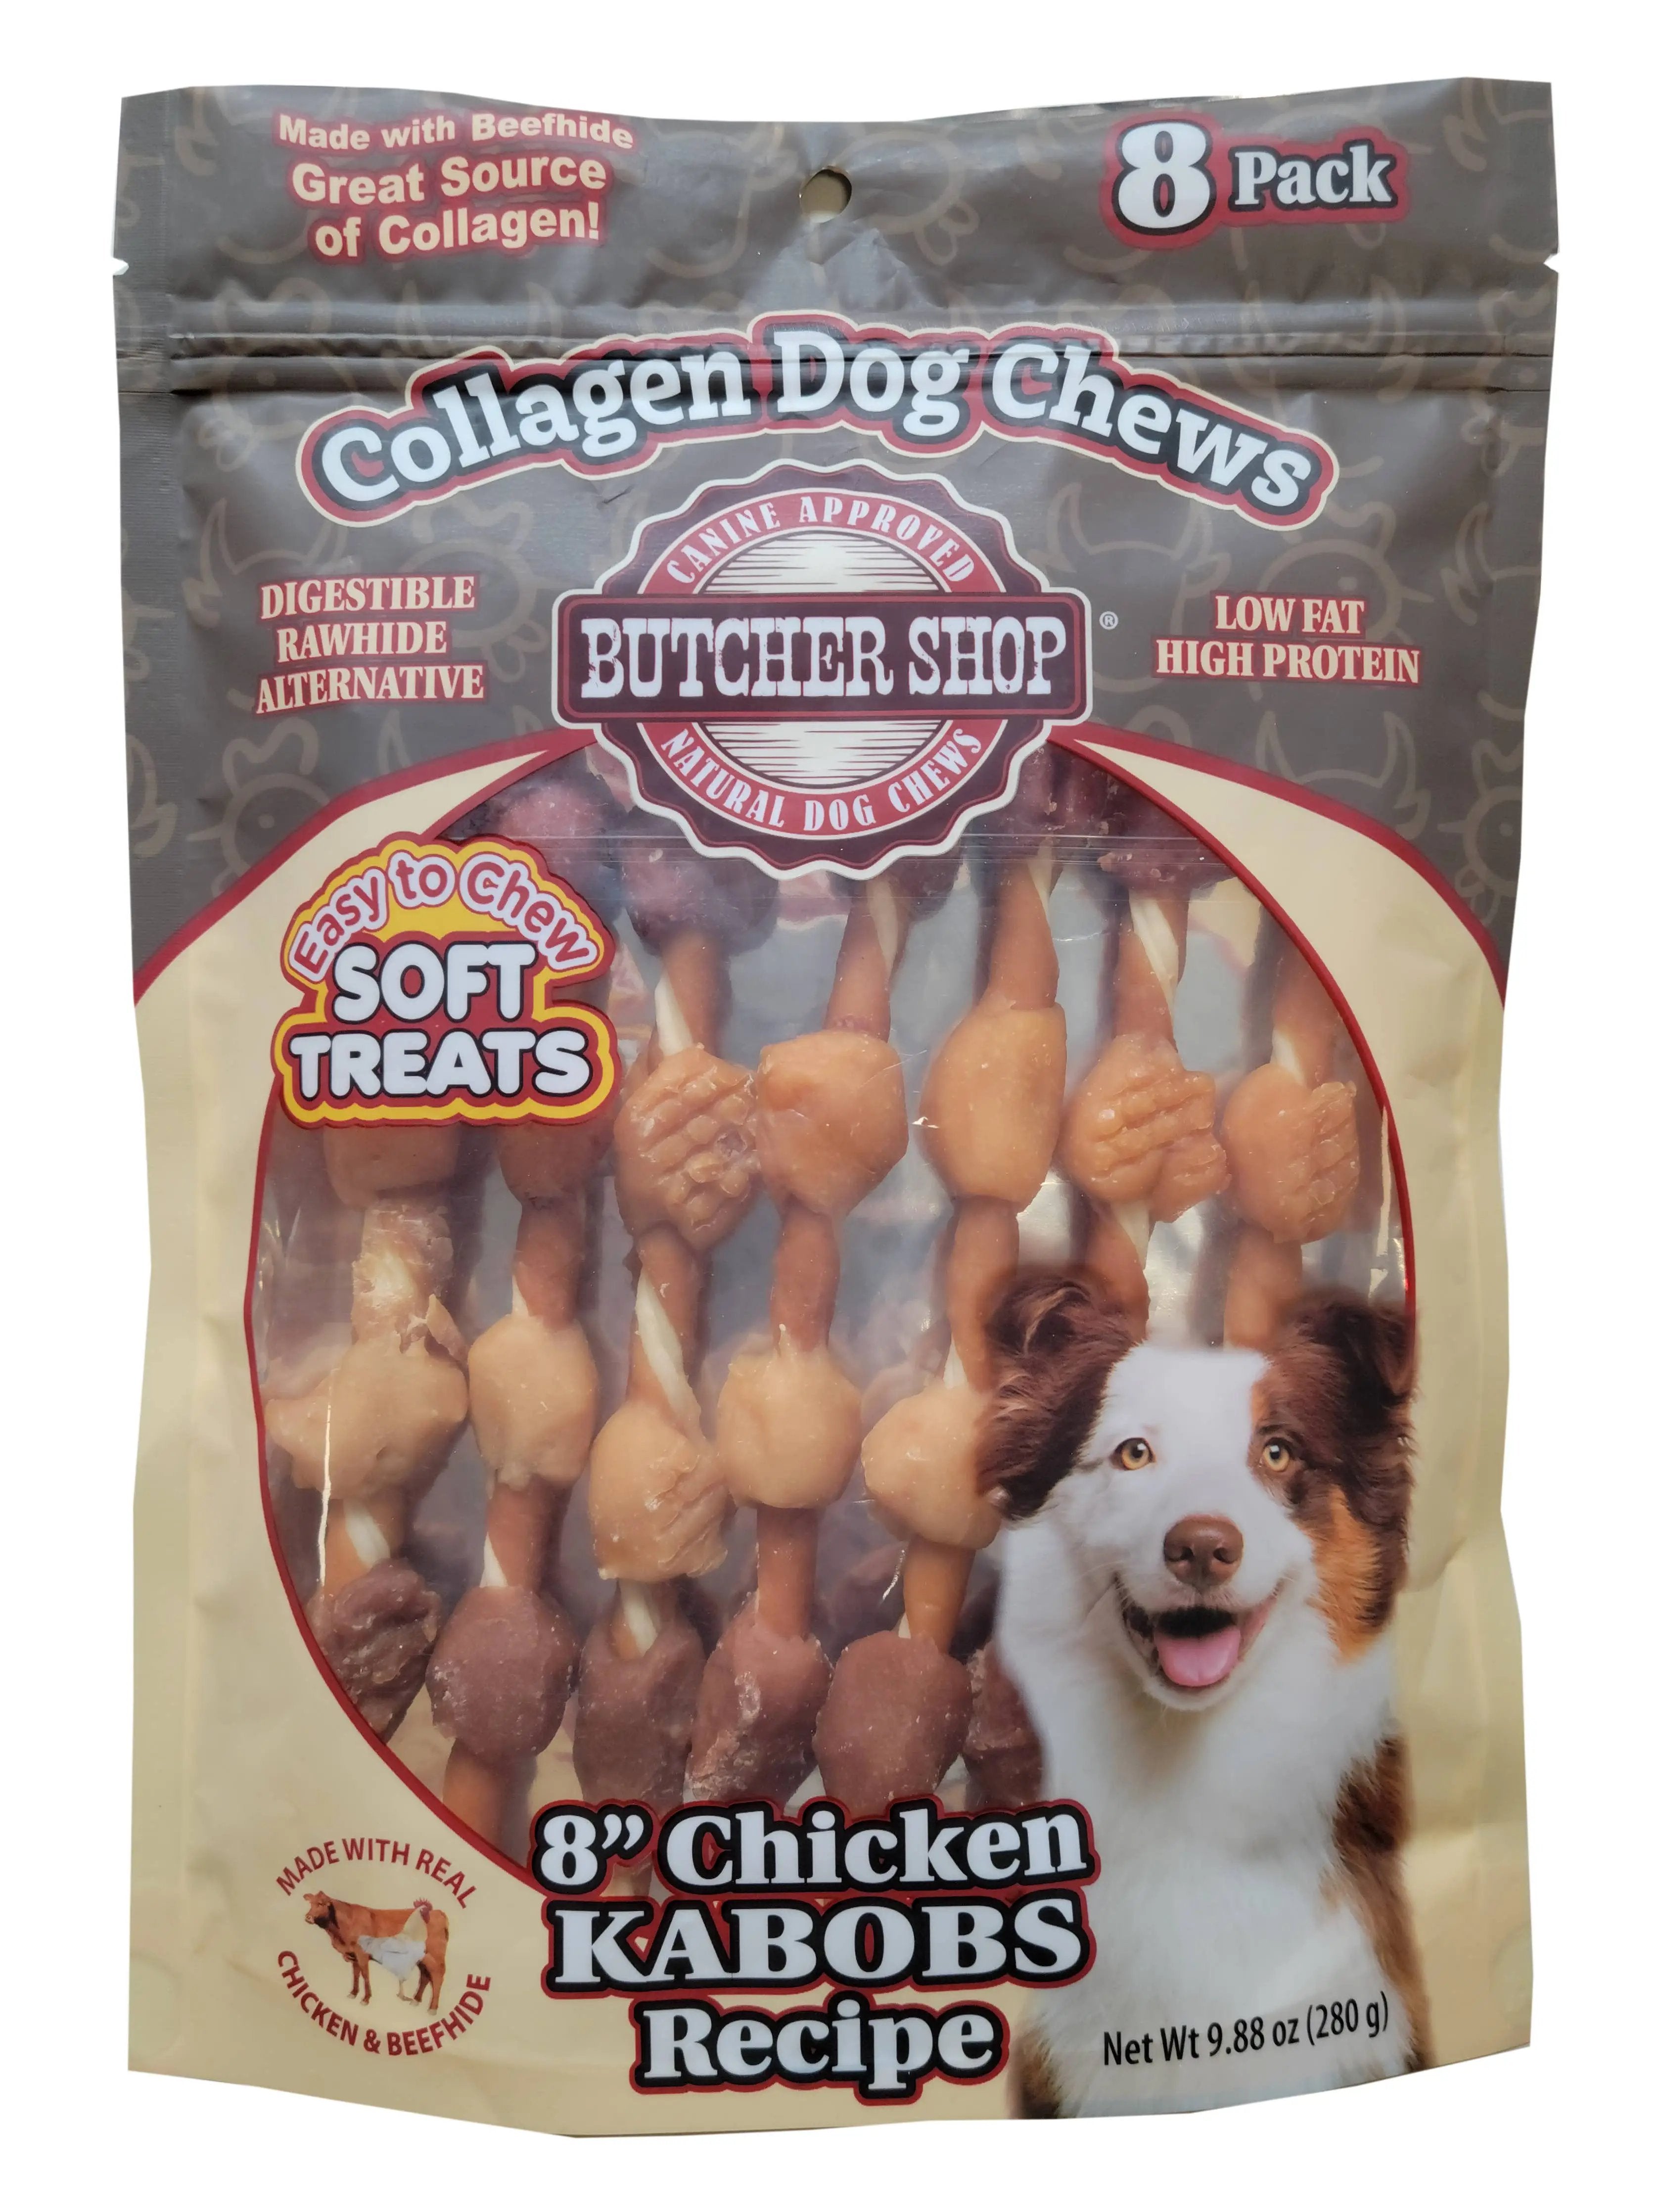 Lovin Tenders Butcher Shop Collagen Dog Chews 8" Chicken Kabobs 8-Pk